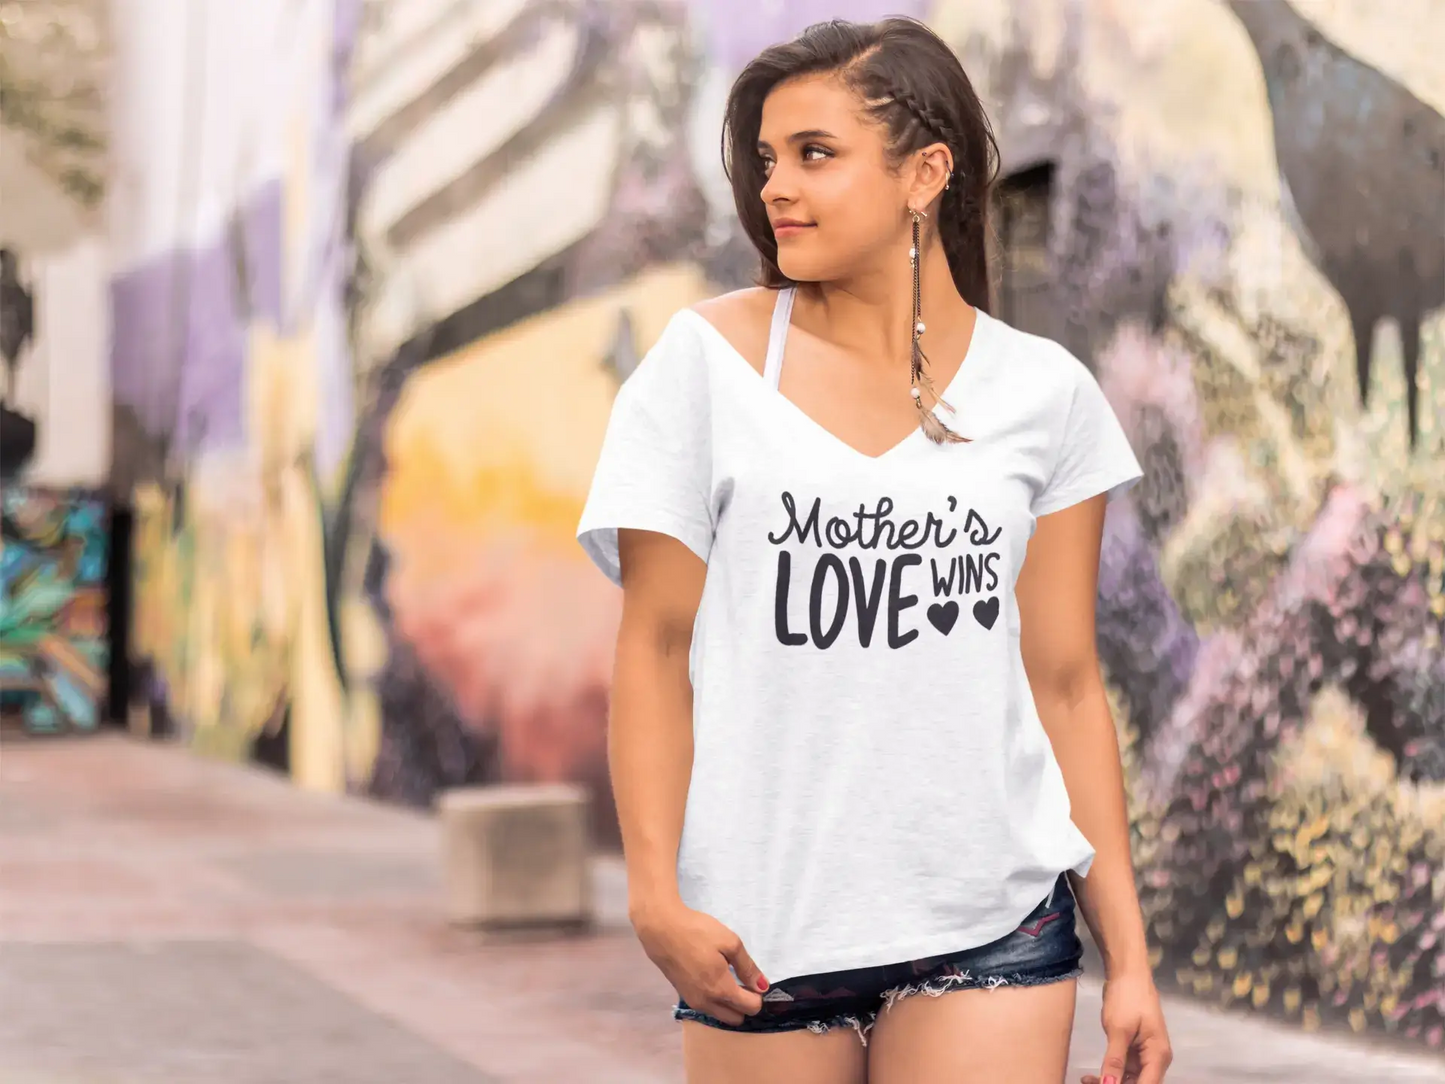 ULTRABASIC Damen T-Shirt Mother's Love Wins – Kurzarm-T-Shirt-Oberteile